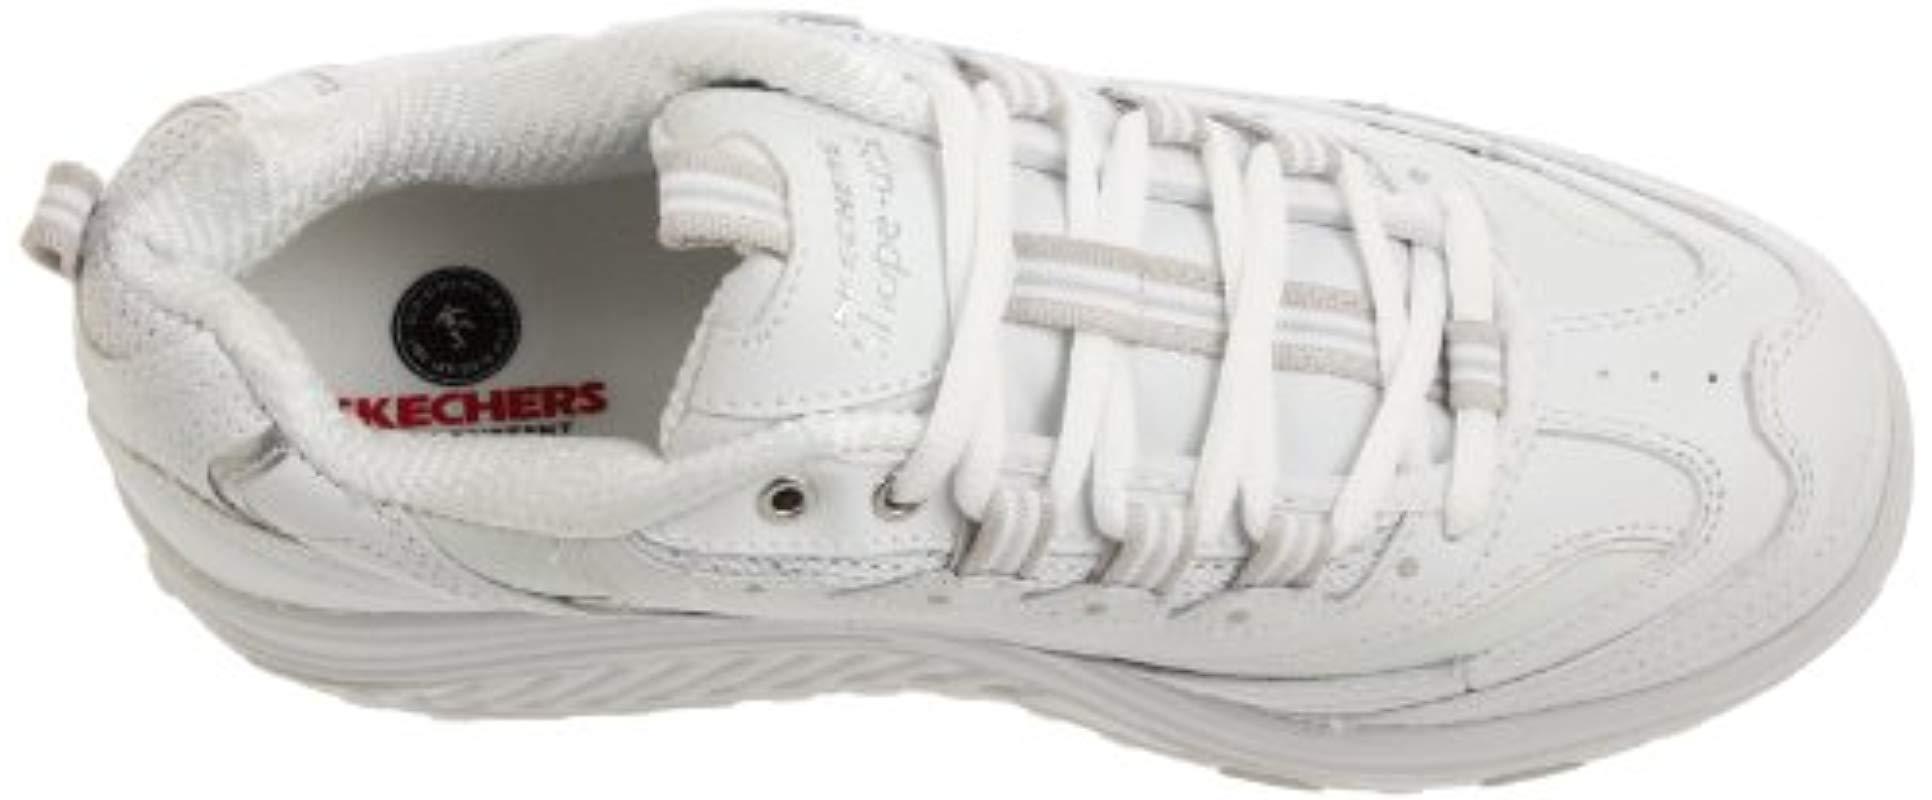 Skechers Shape-ups Metabolize 11800 WSL Damen Sneaker in Weiß | Lyst DE